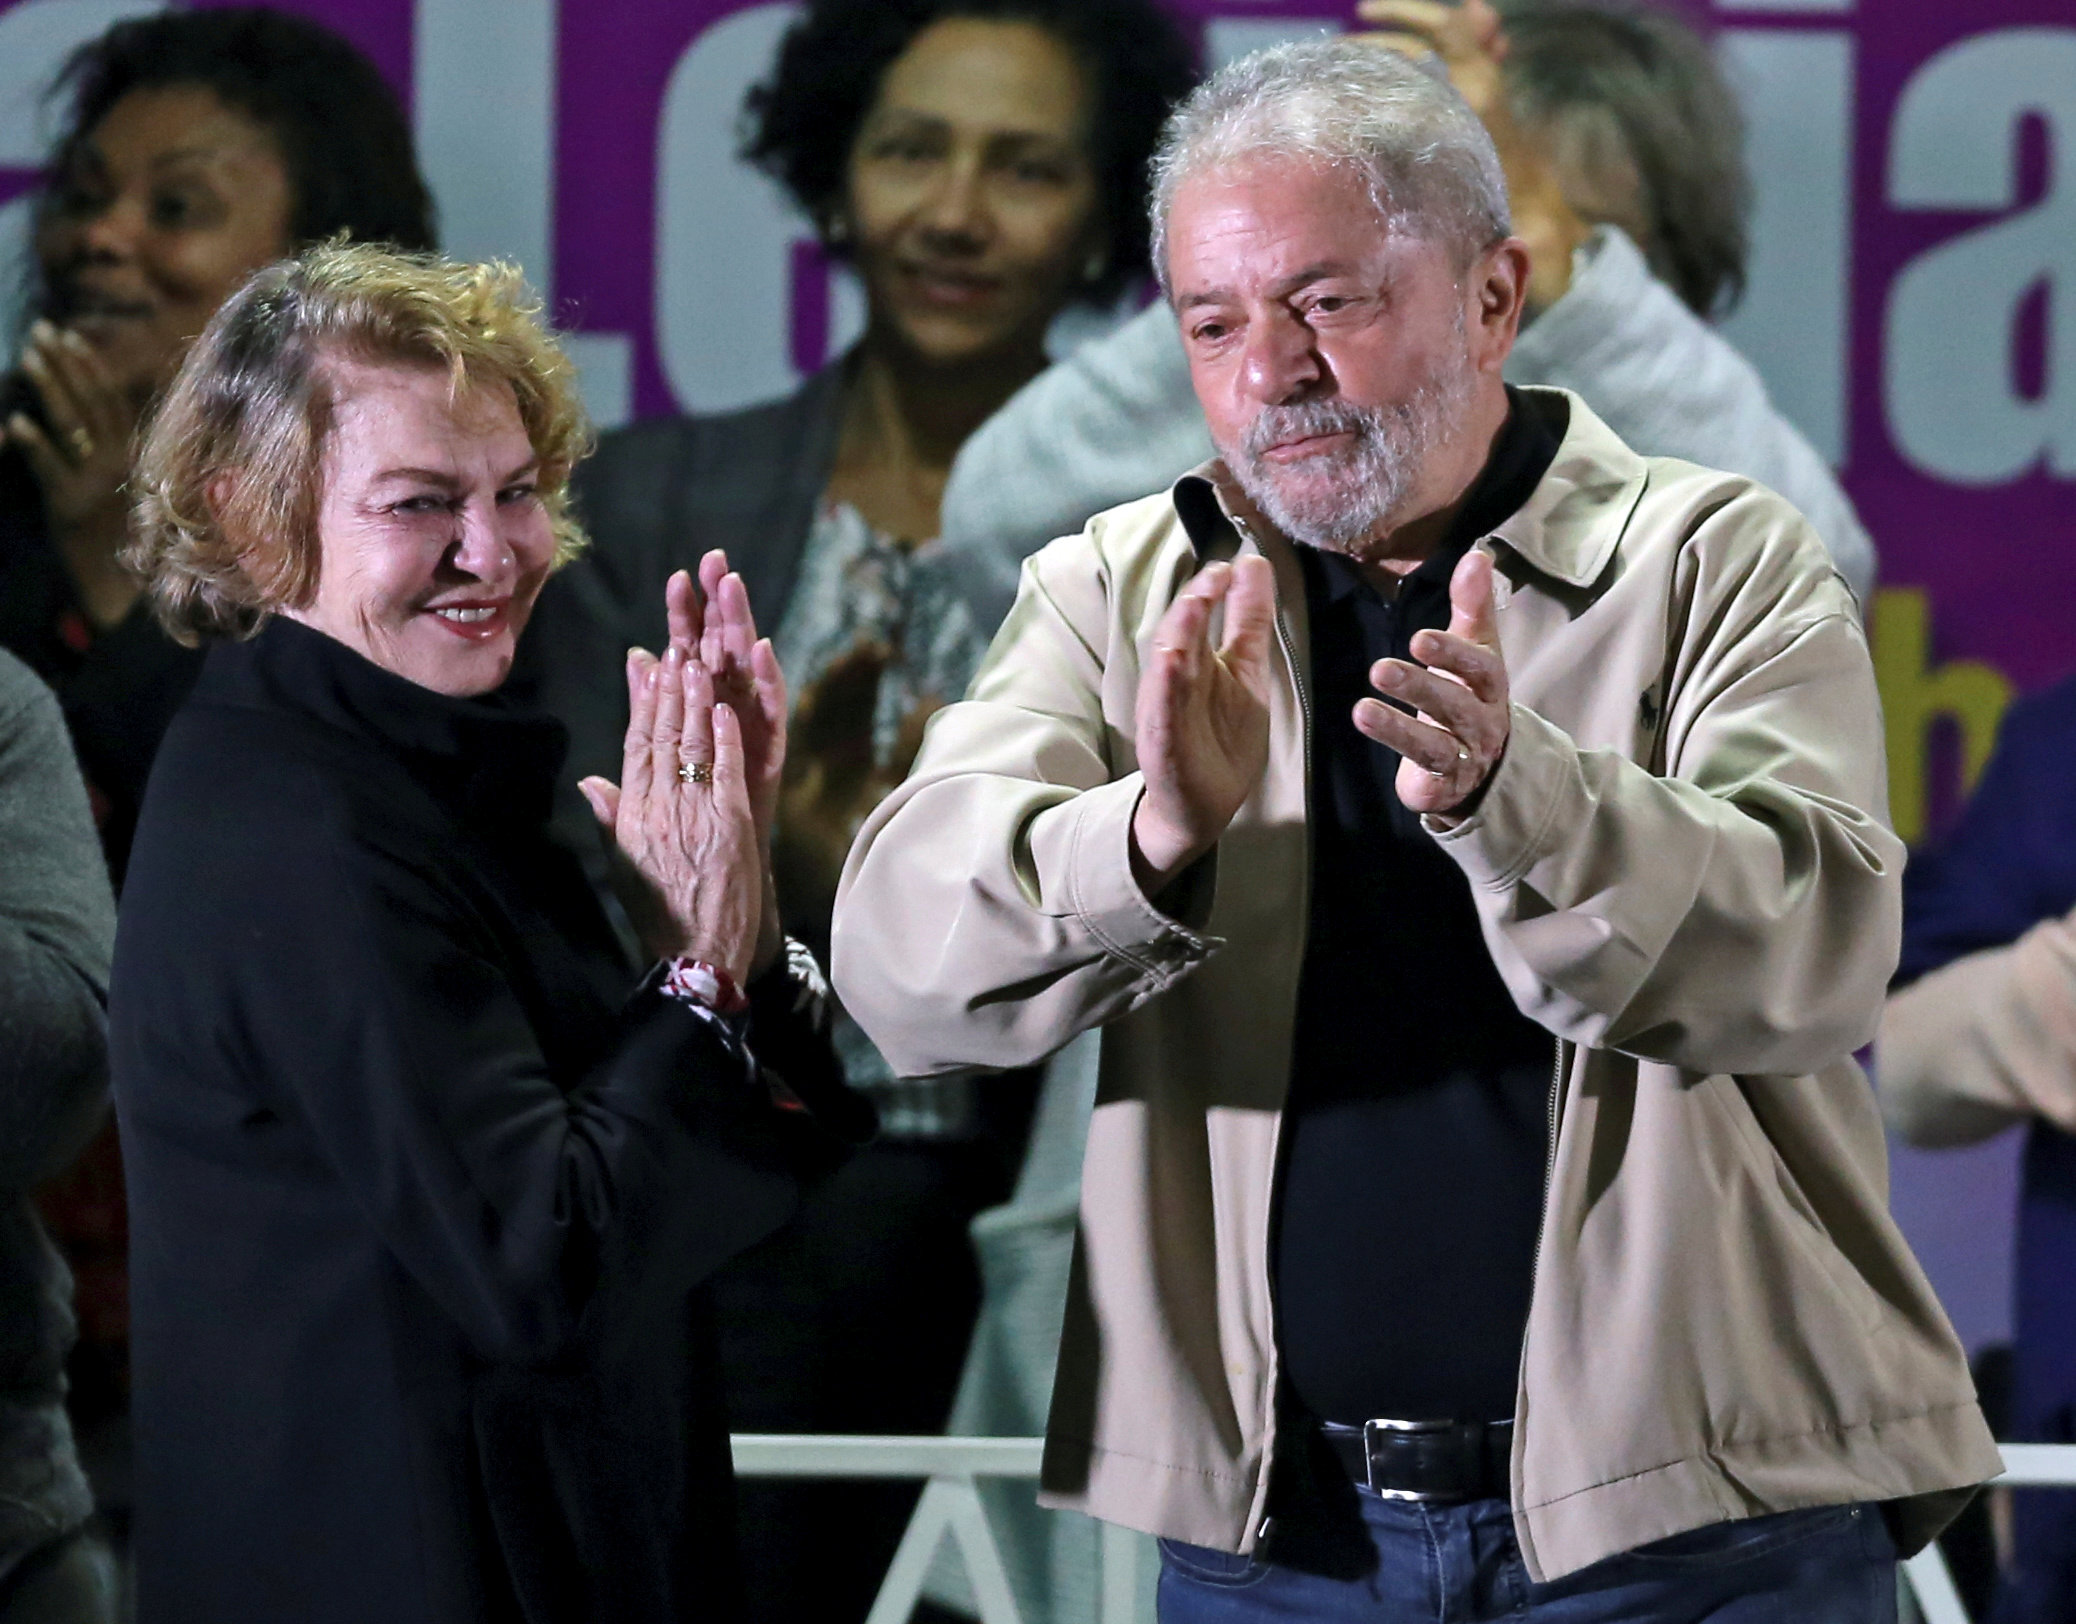 Así fue como Temer le dio el pésame a Lula en el funeral de su esposa (Foto)